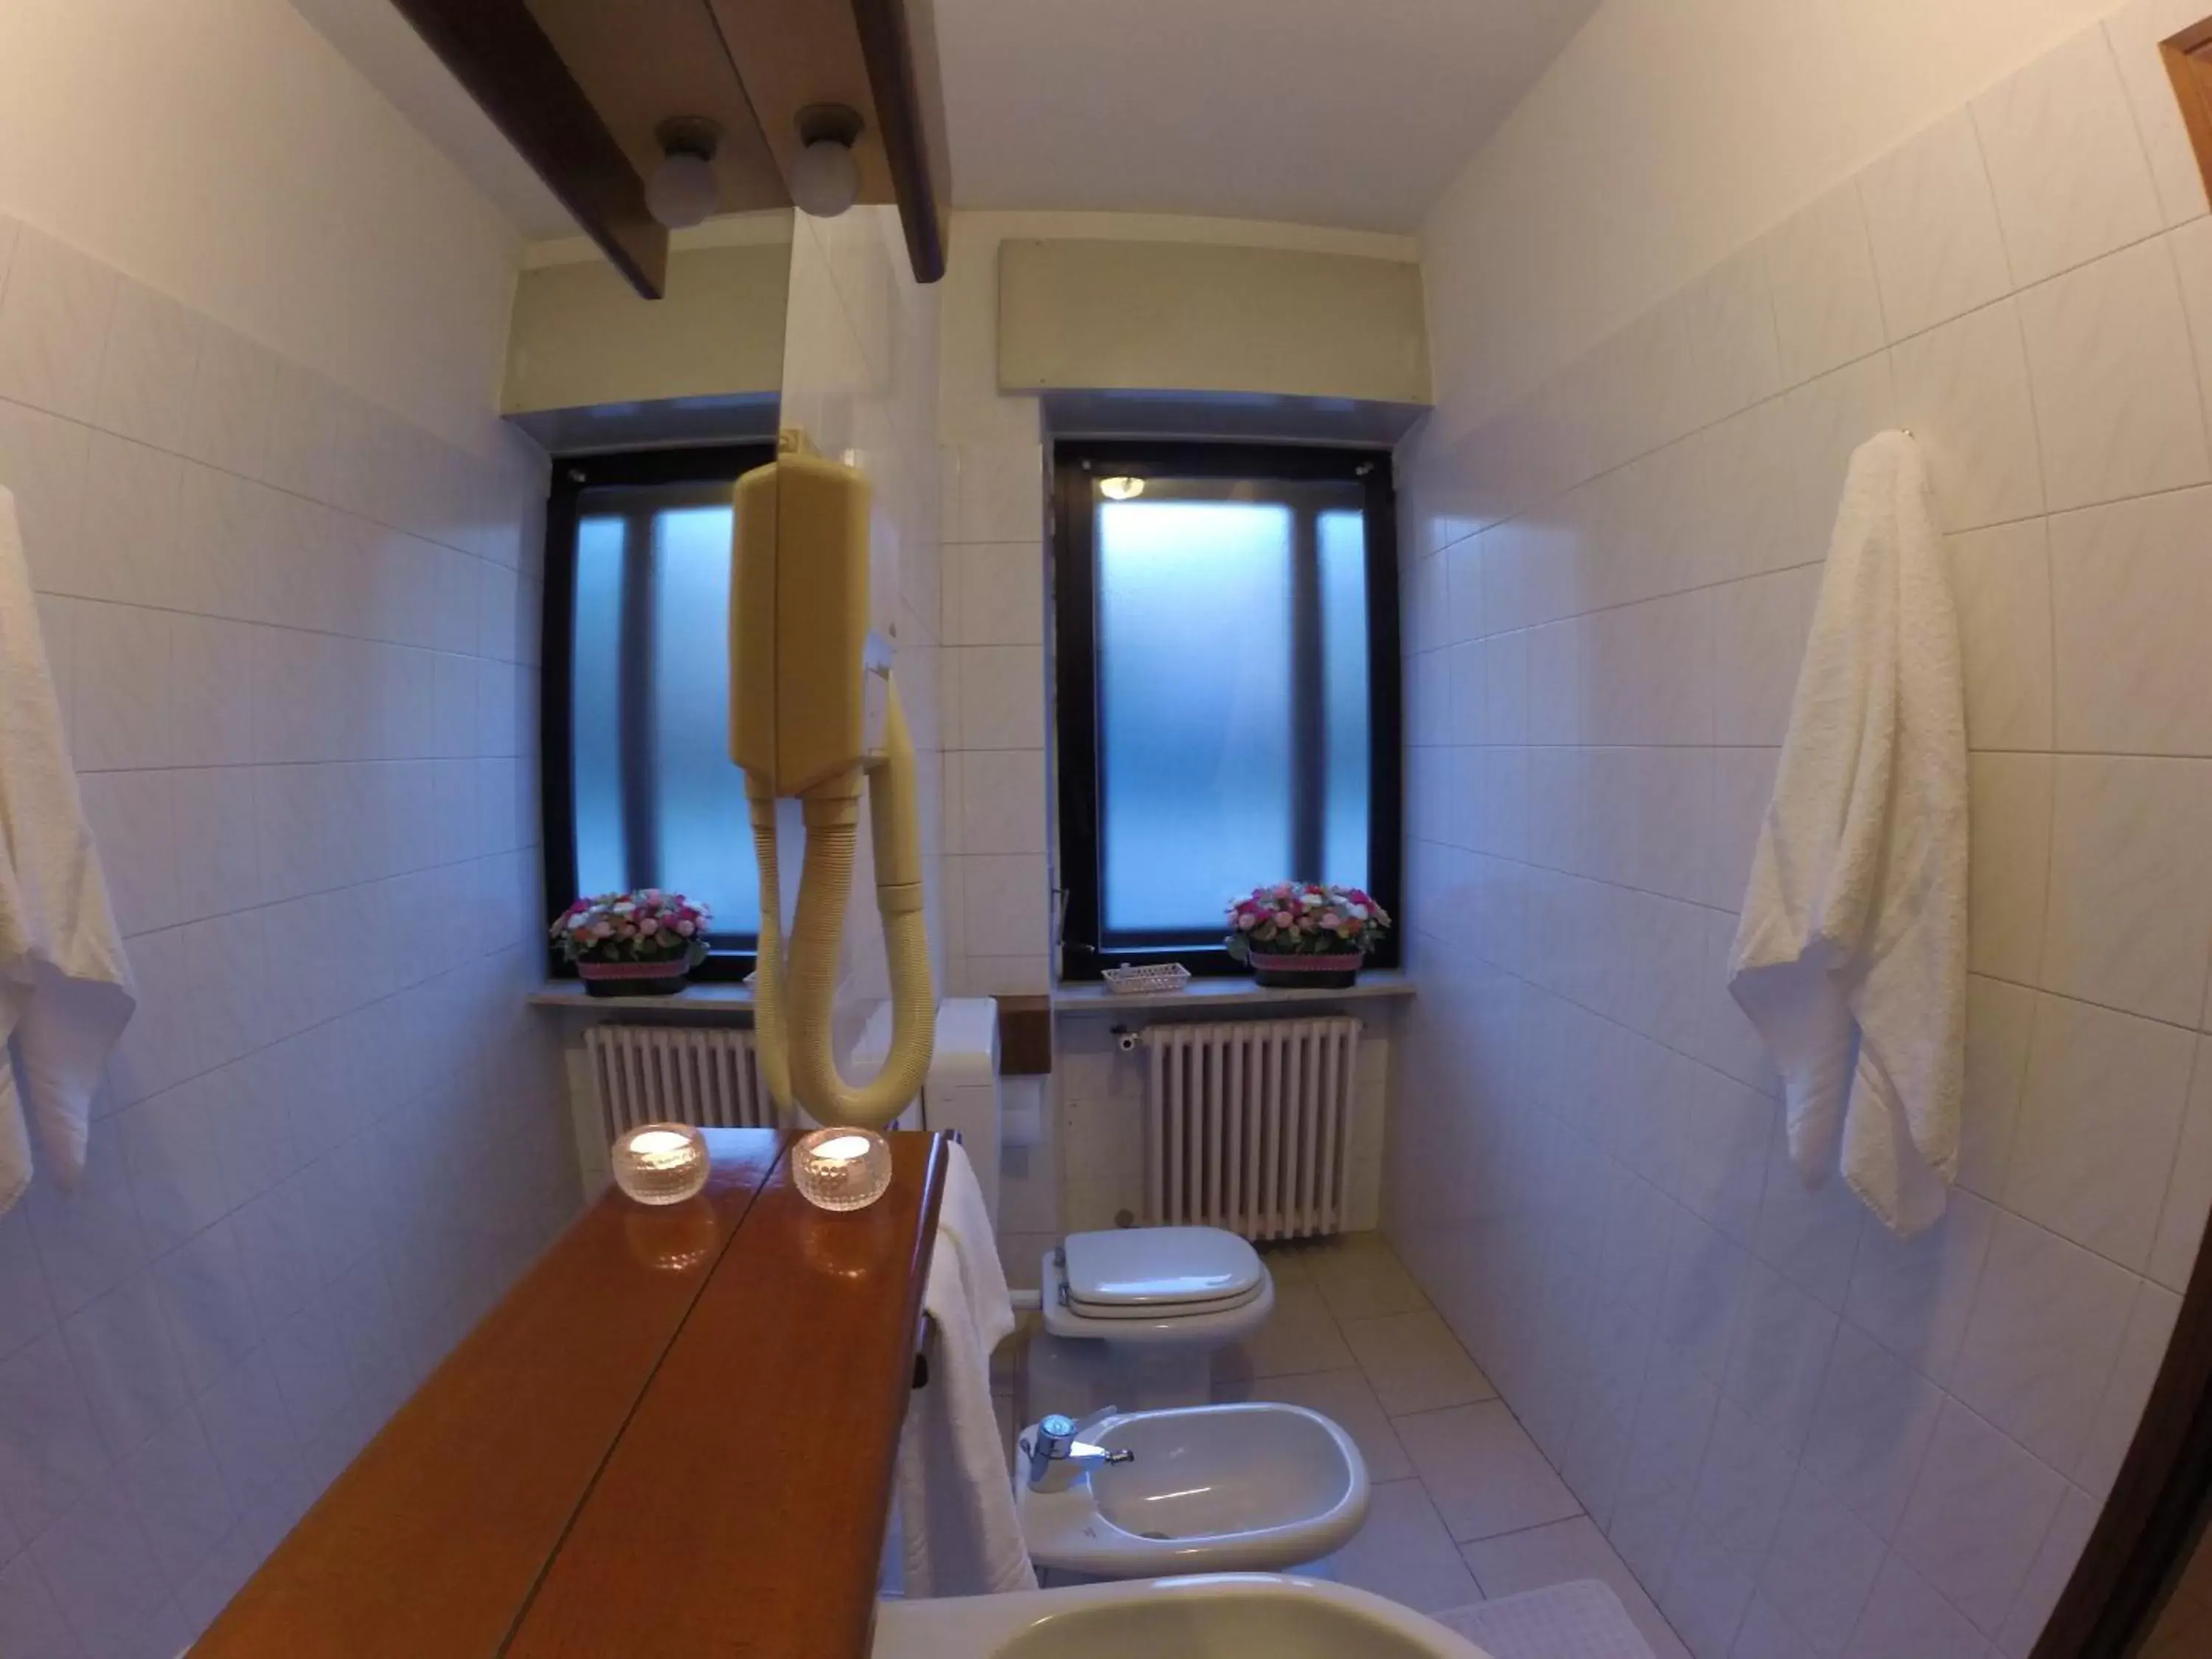 Toilet, Bathroom in Flying Hotel